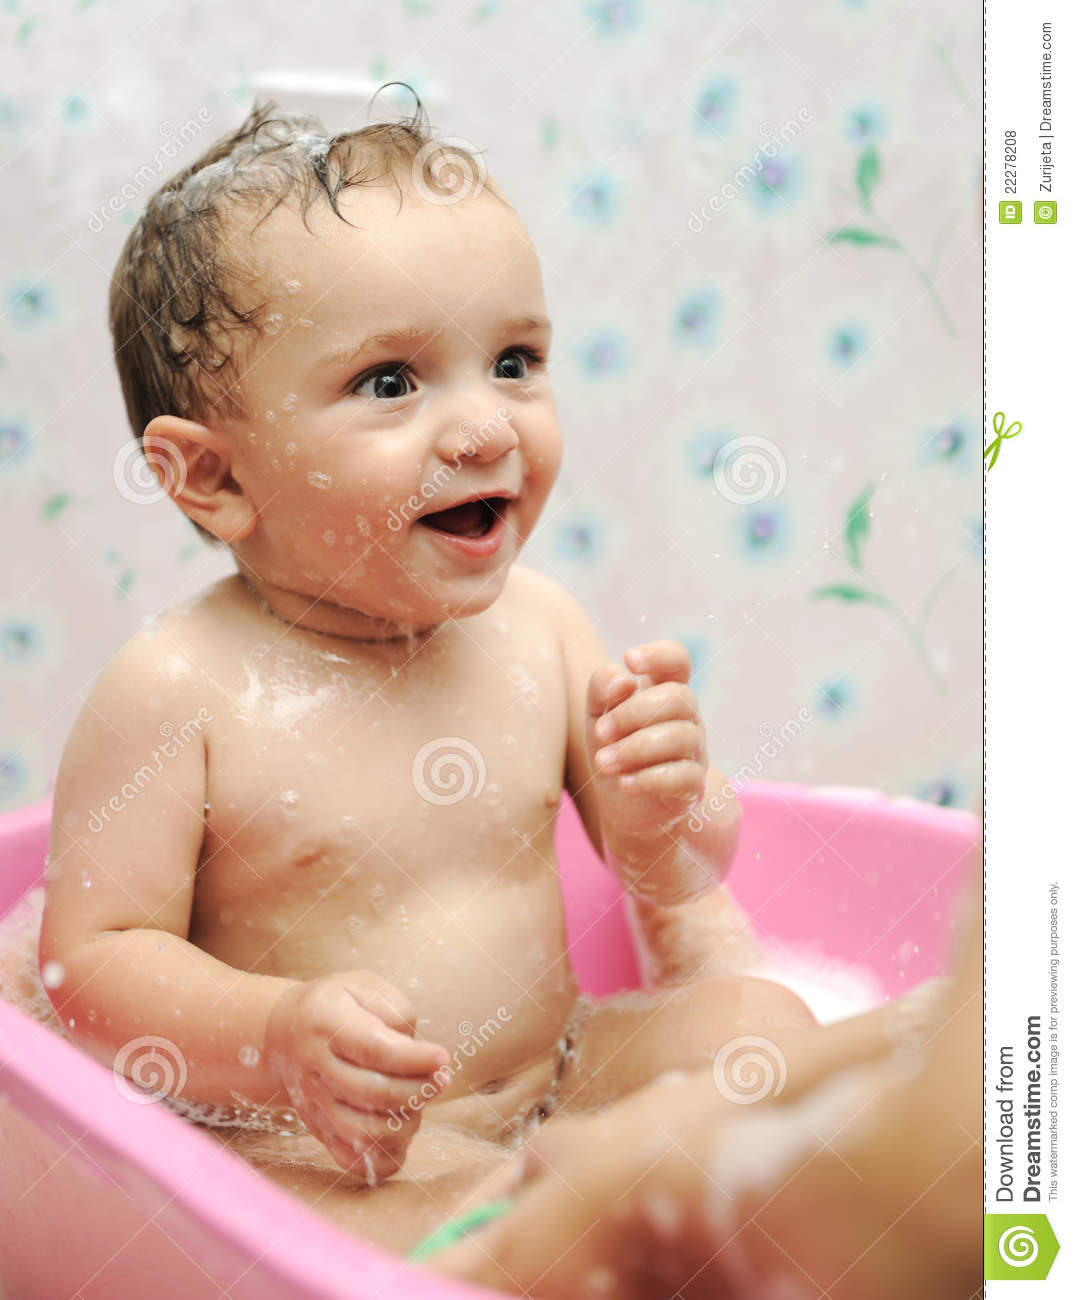 baby boy bath